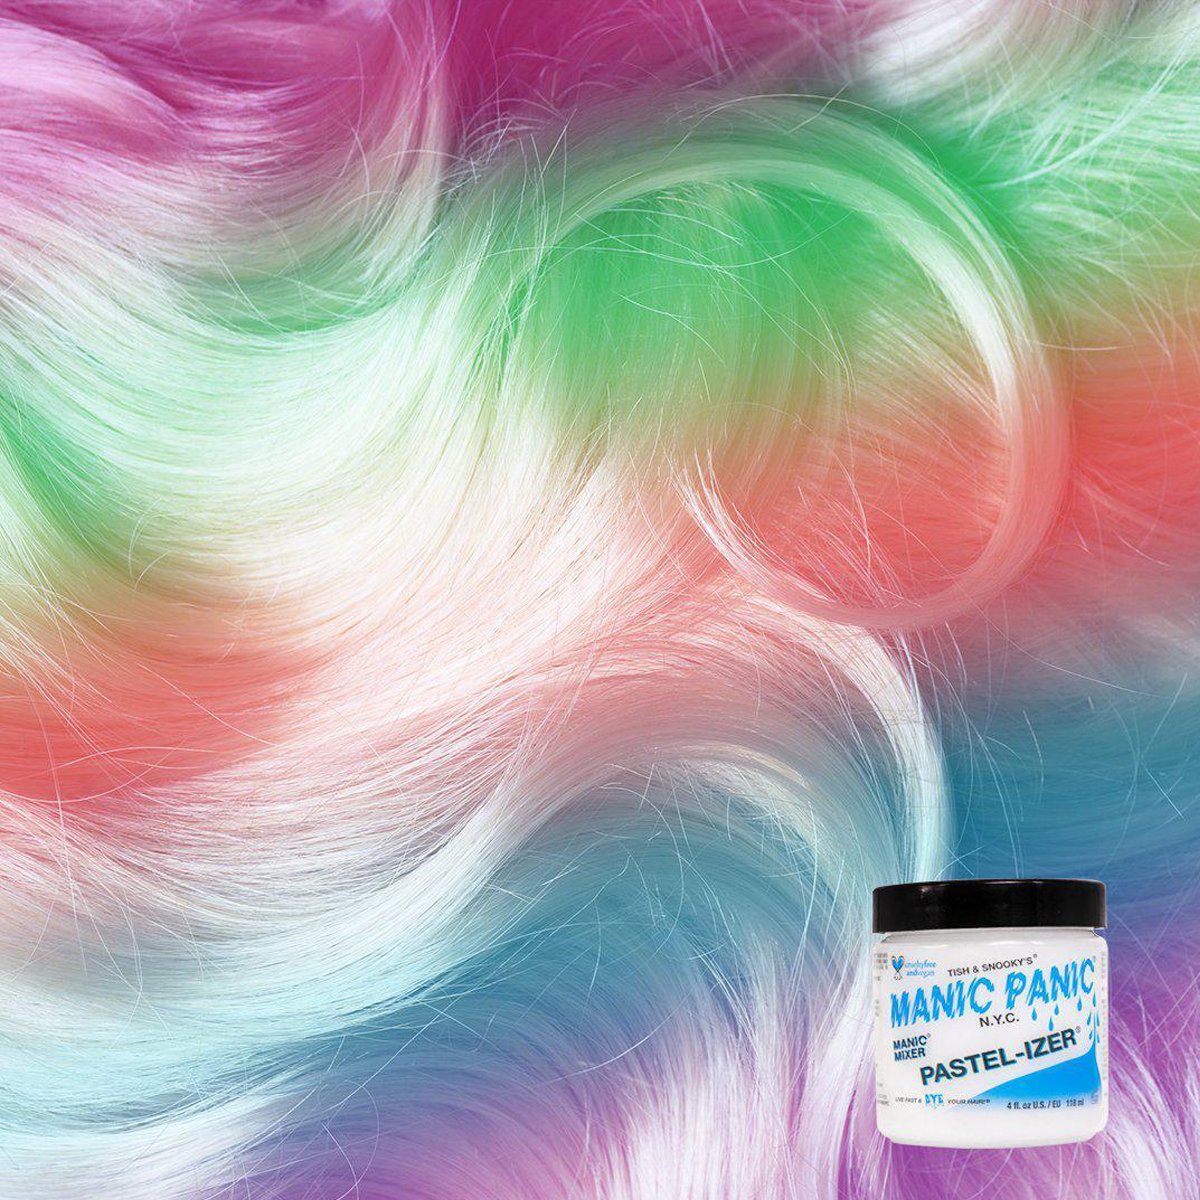 Manic Panic Classic Mixer/Paster-Izer Saç Boyası Pastelleştirici HCR-11047